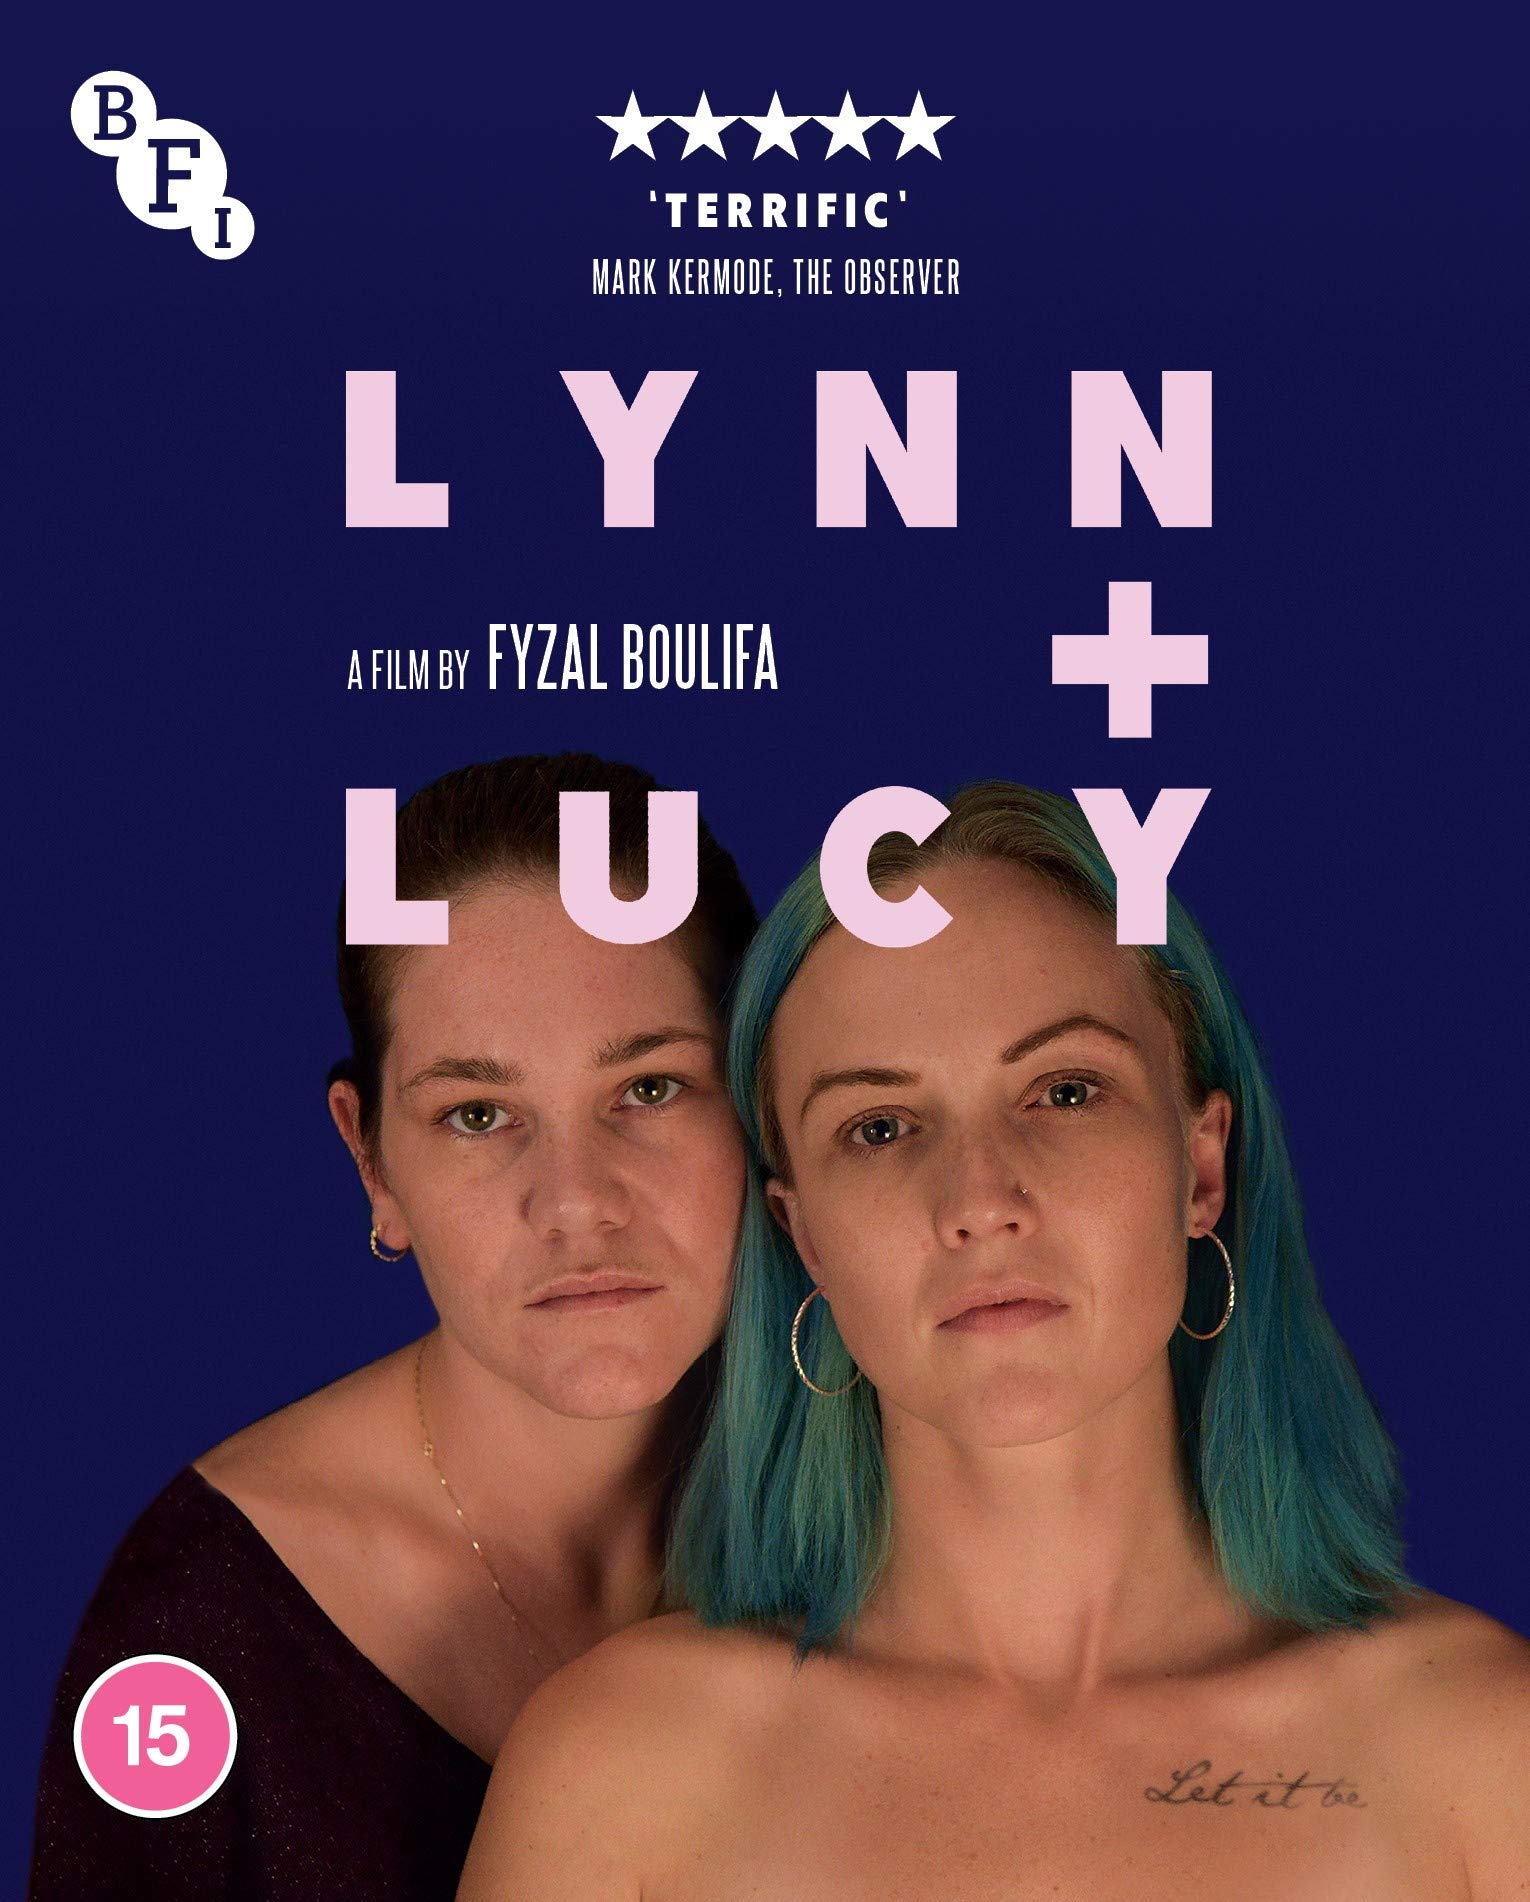 Lynn + Lucy (Blu-ray)